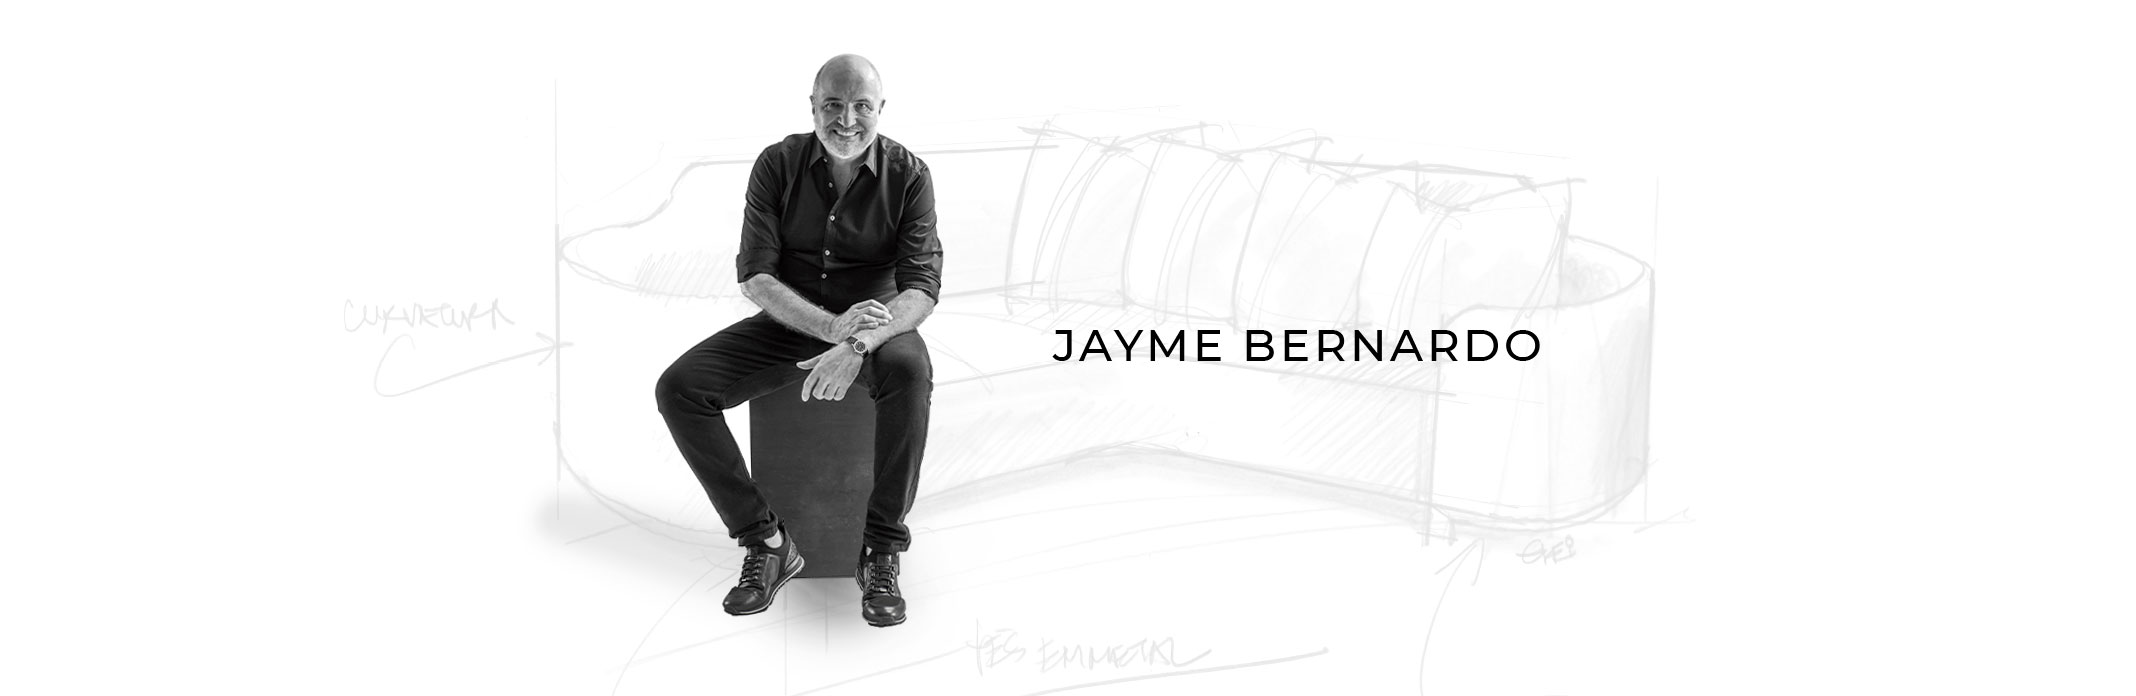 Jayme Bernardo